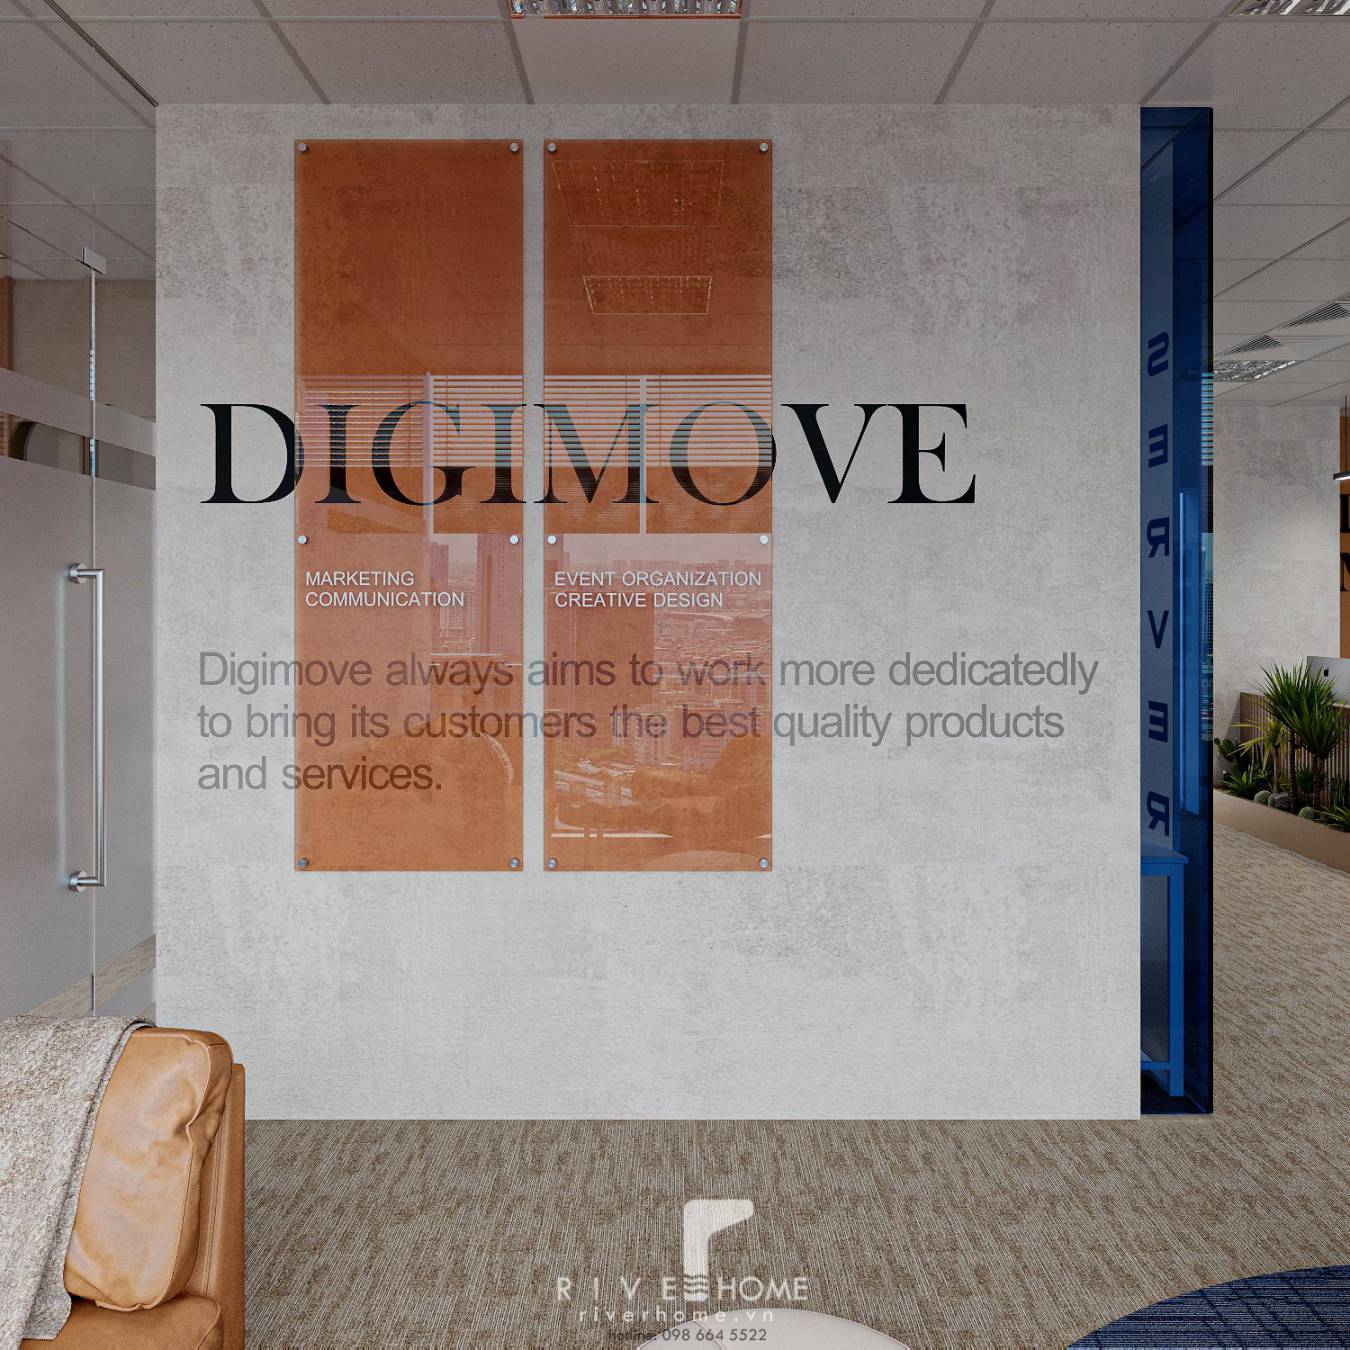 Thiết kế nội thất văn phòng 94m2 DigiMove hiện đại và thanh lịch - Riverhome